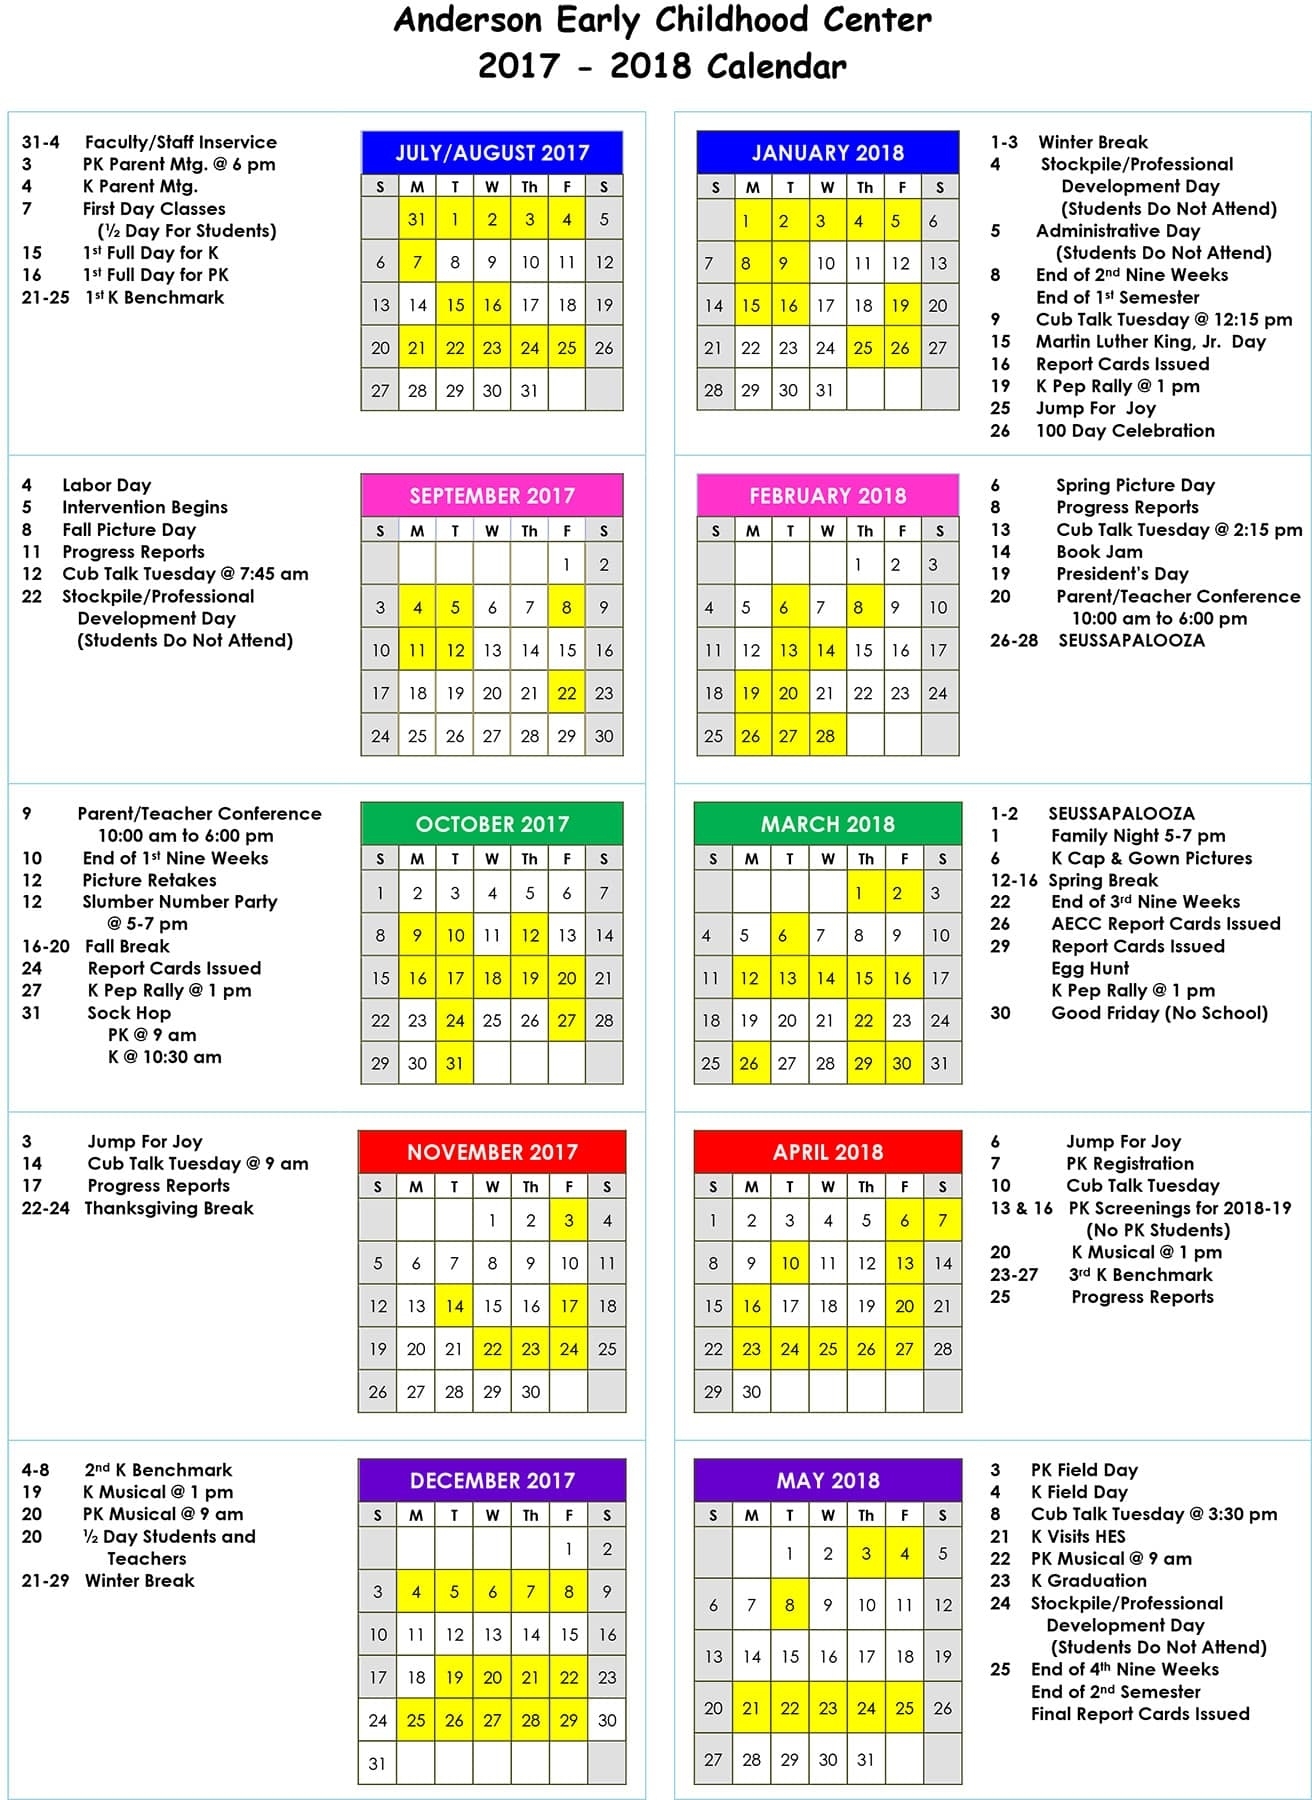 School Calendar | Haywood County Schools Anderson 2 School Calendar